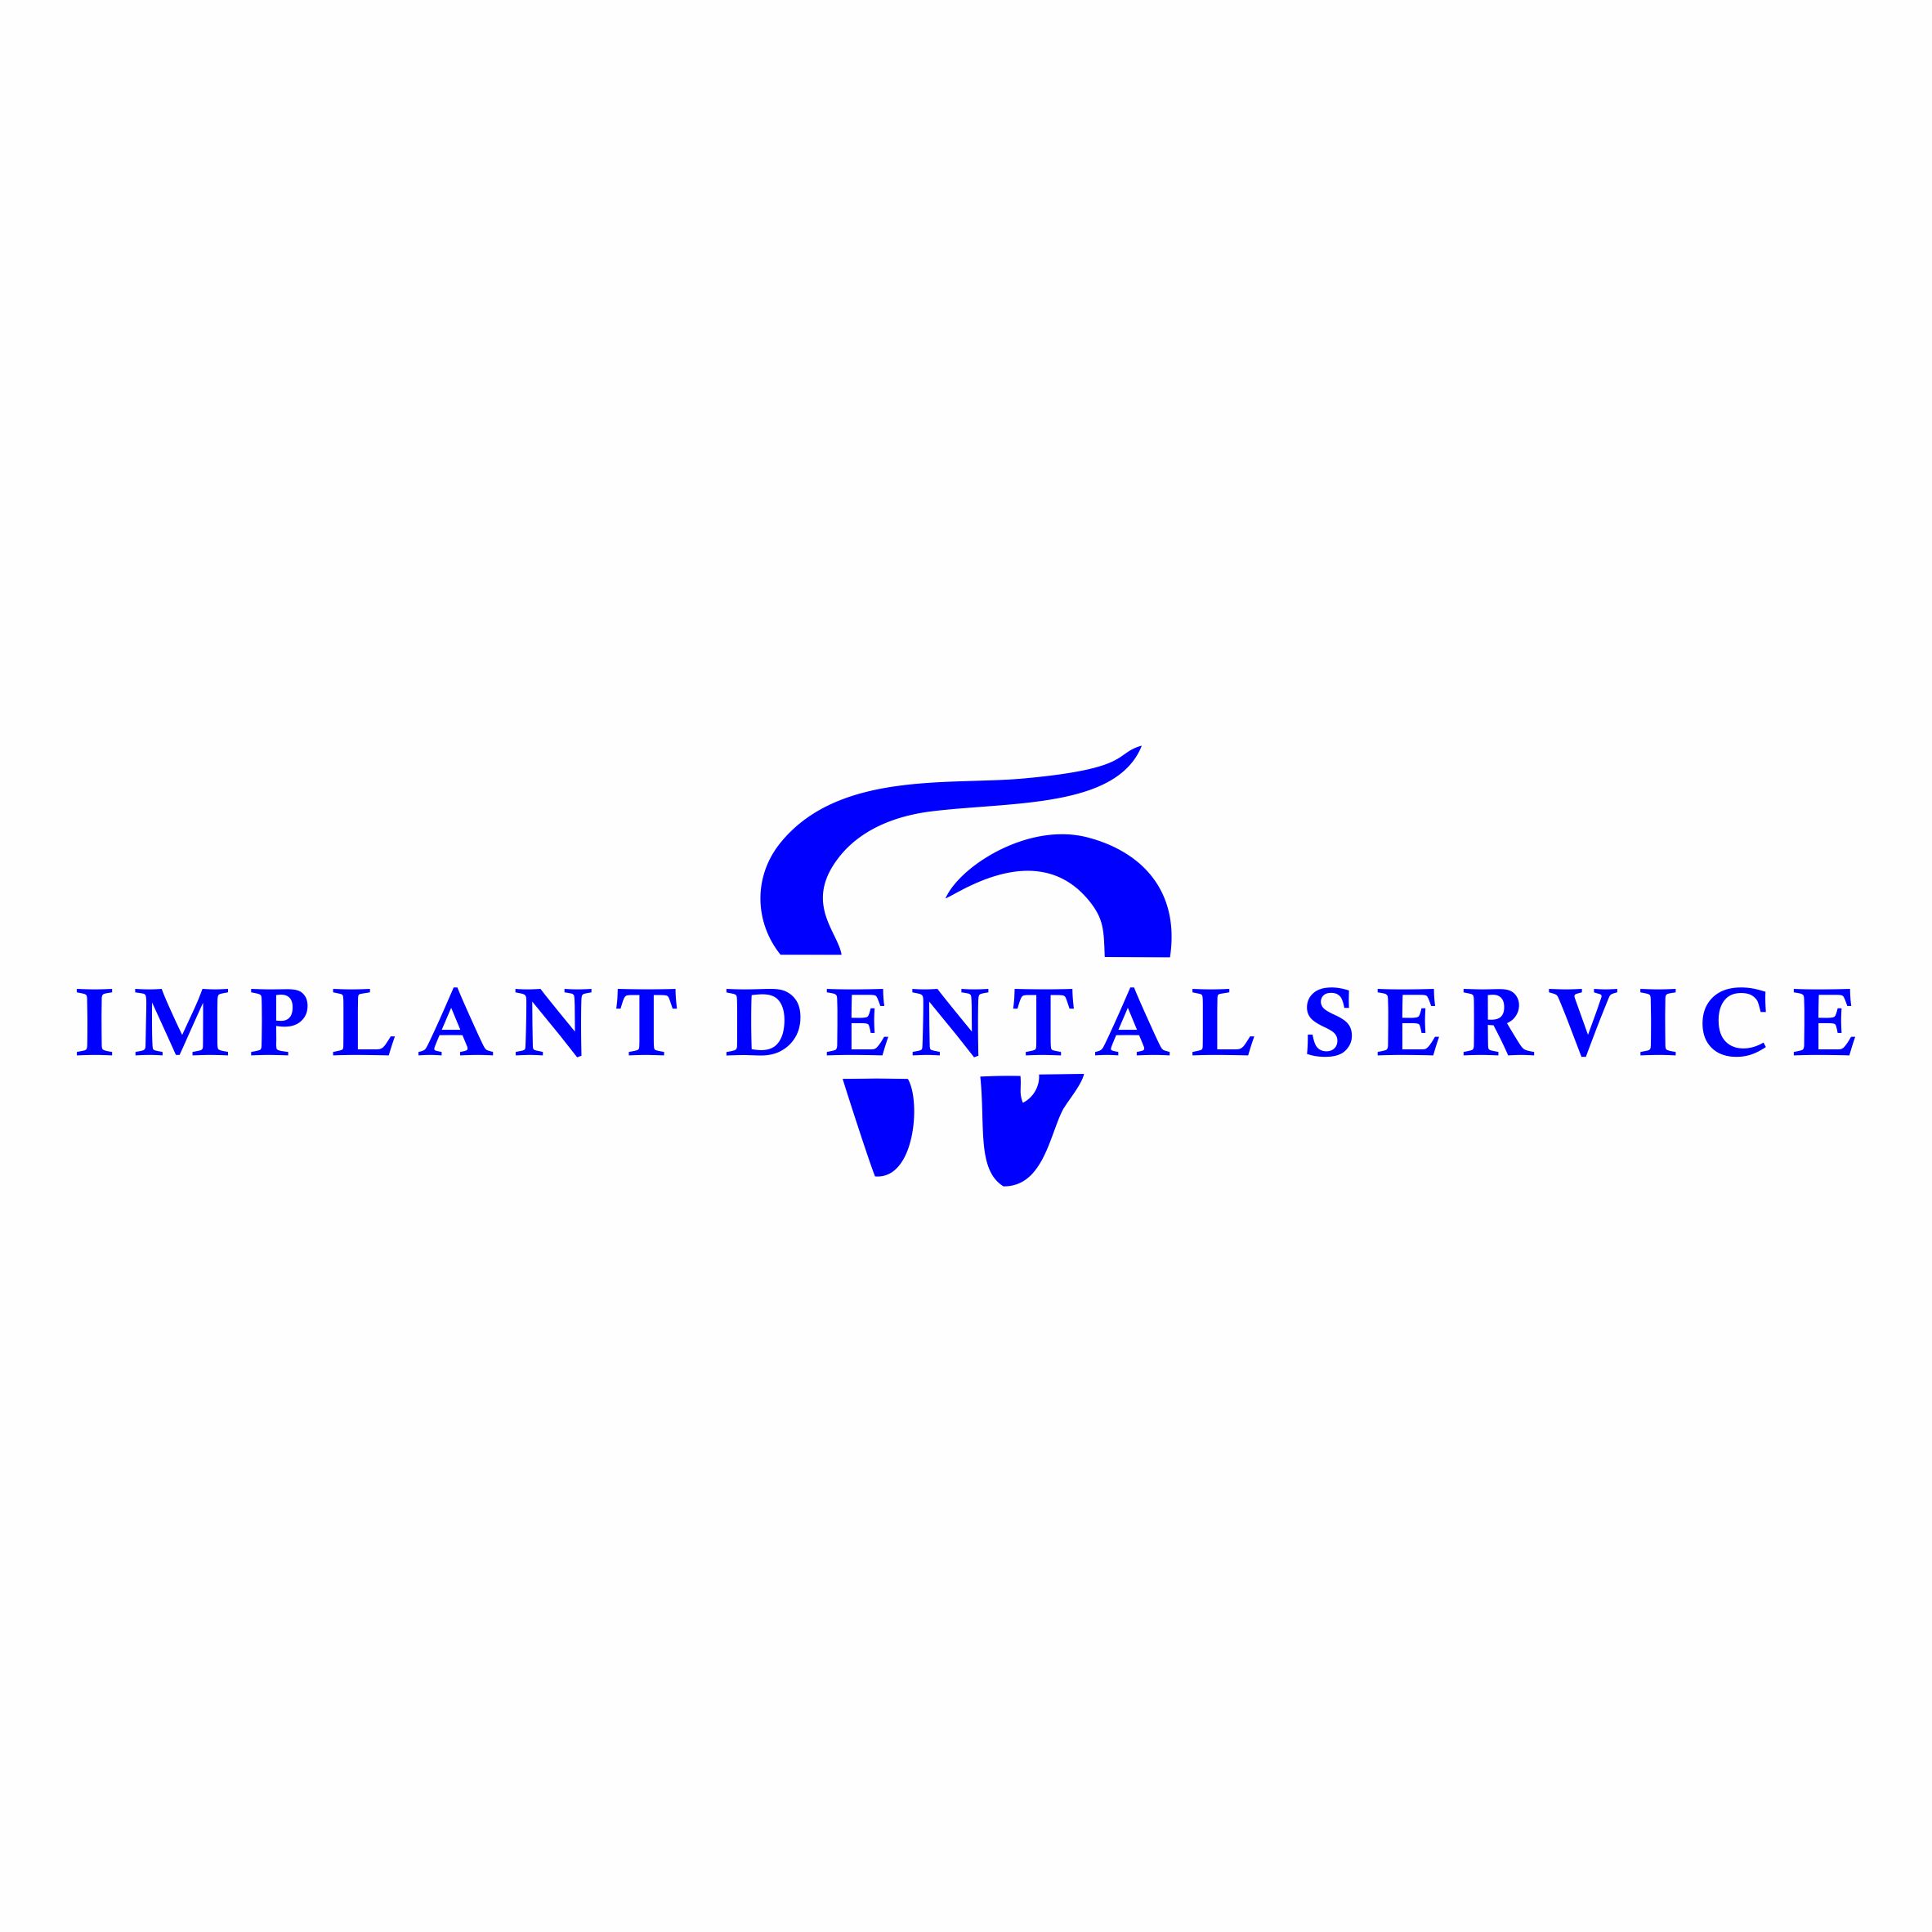 стоматологический центр "implant dental service" - medik.kg